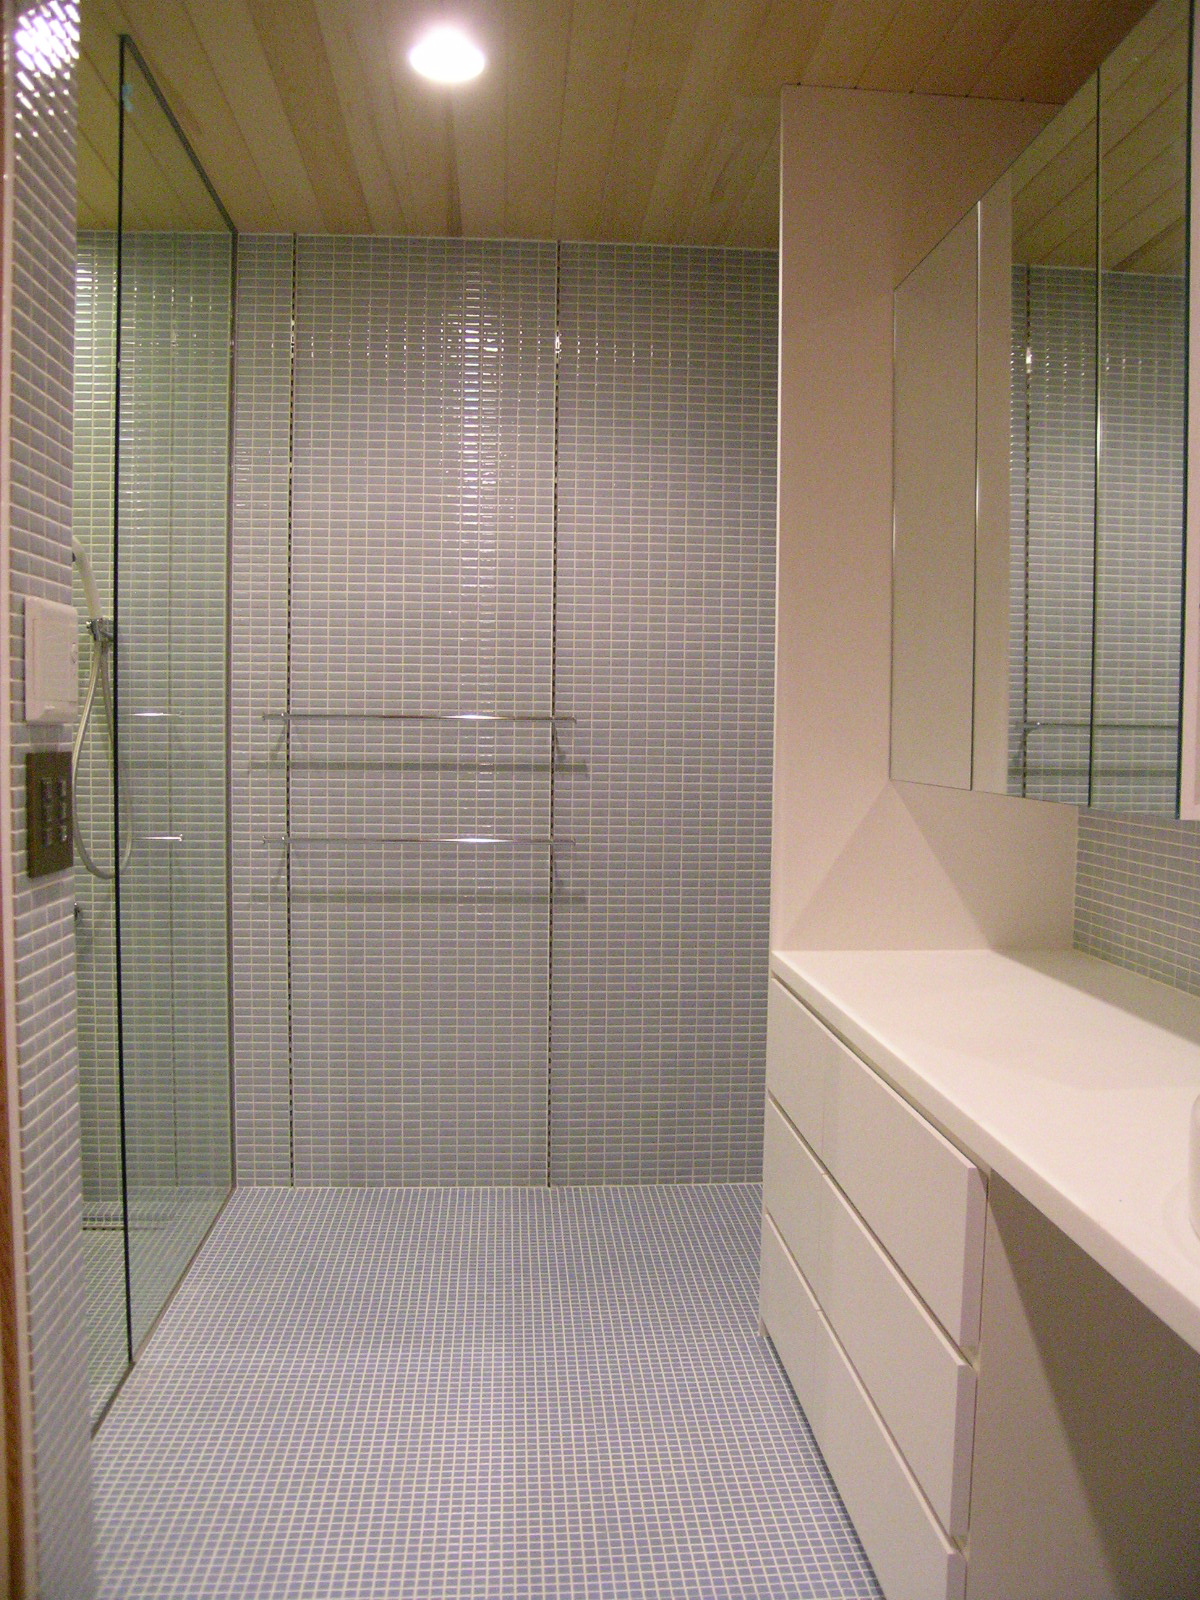 バスルームと洗面スペースは床壁とオシャレなモザイクタイル Fevecasa フェブカーサ